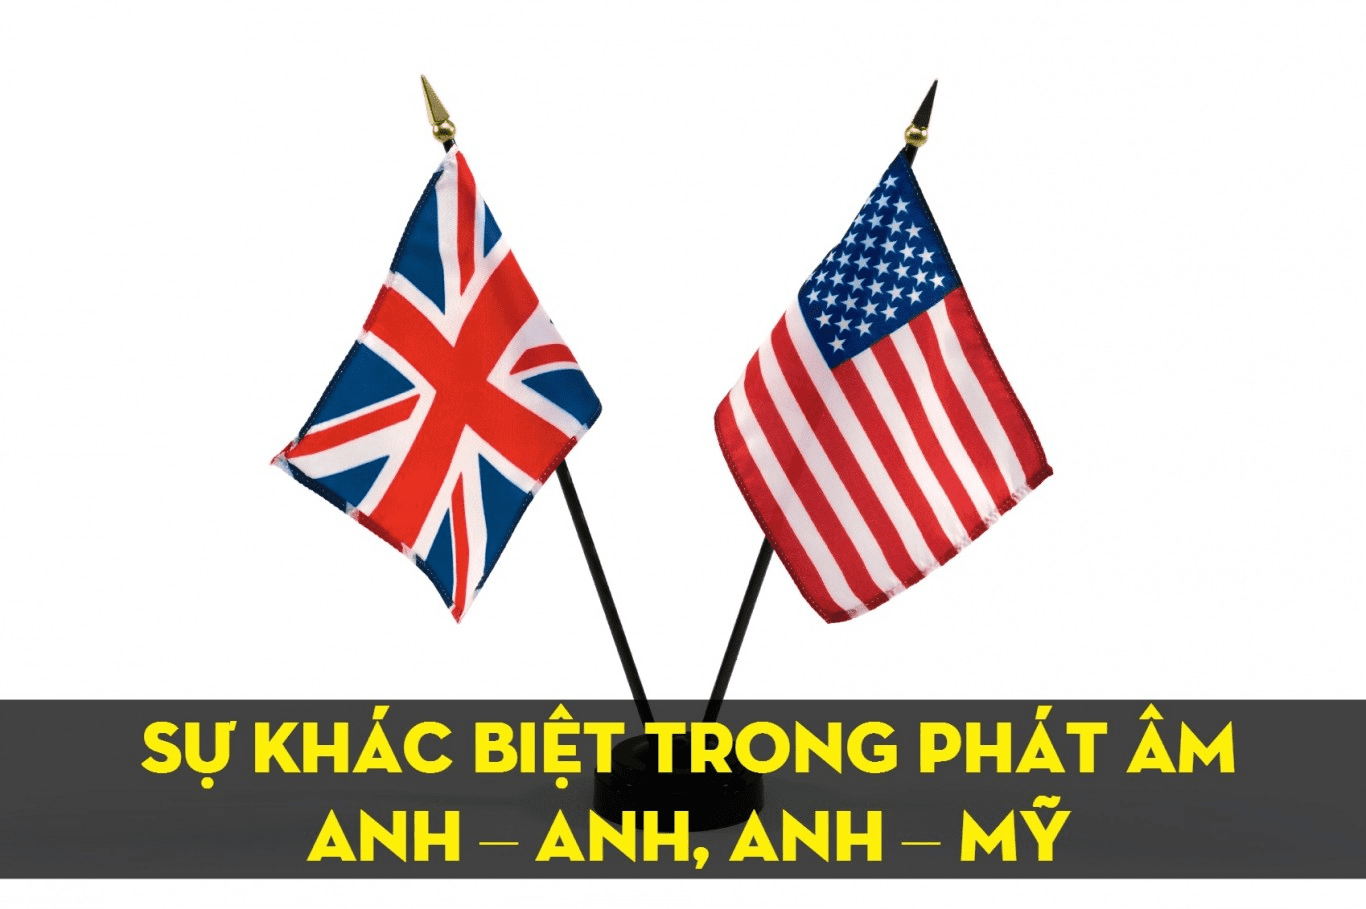 Sự khác biệt giữa tiếng Anh Anh và tiếng Anh Mỹ: Tiếng Anh Anh và Mỹ có sự khác biệt nhất định trong việc sử dụng từ ngữ và phát âm. Trong hình ảnh này, bạn sẽ tìm hiểu được Quốc kỳ của Anh và Mỹ trong tiếng Anh, từ đó có được hiểu biết thêm về lịch sử, văn hóa của hai quốc gia này cũng như cải thiện khả năng phát âm của mình.